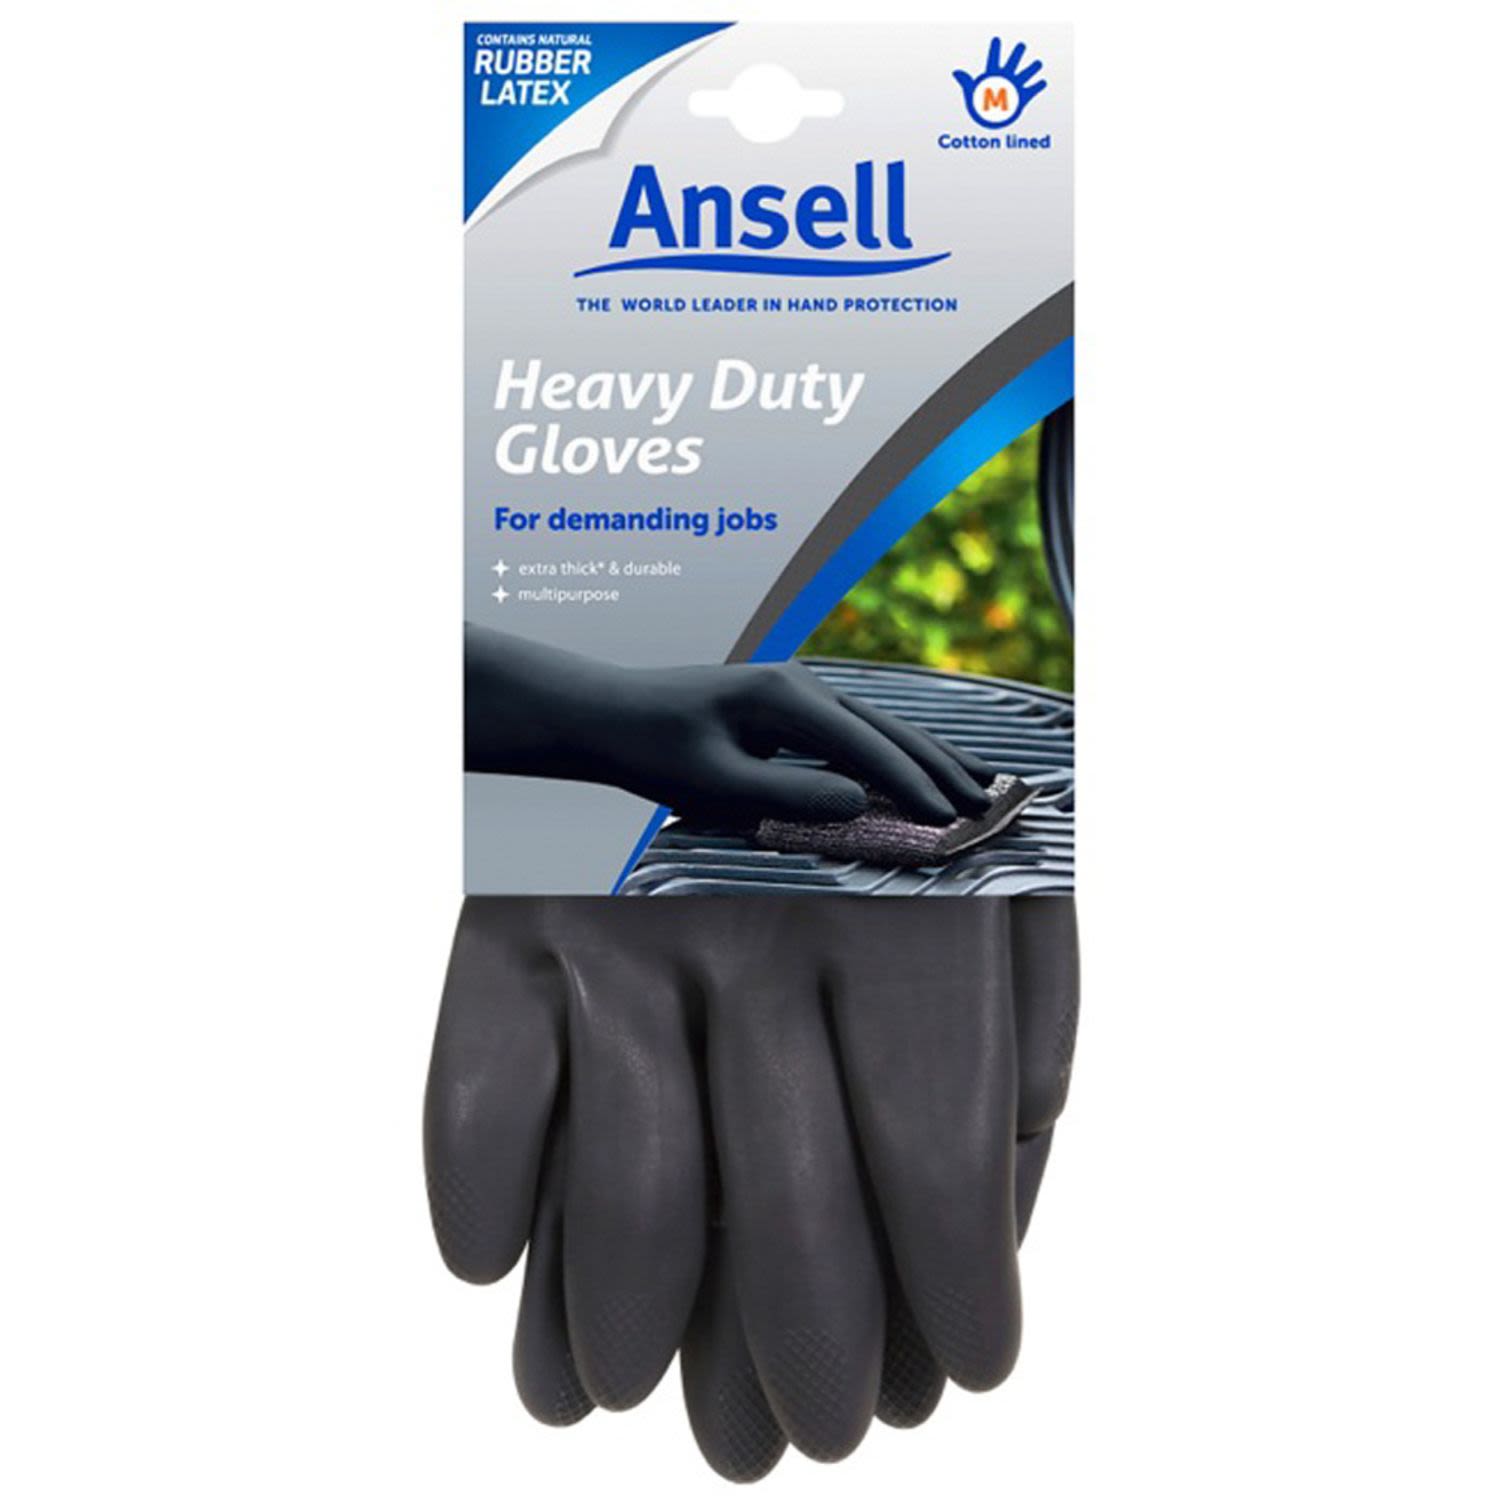 Ansell Gloves Heavy Duty Medium, 1 Each